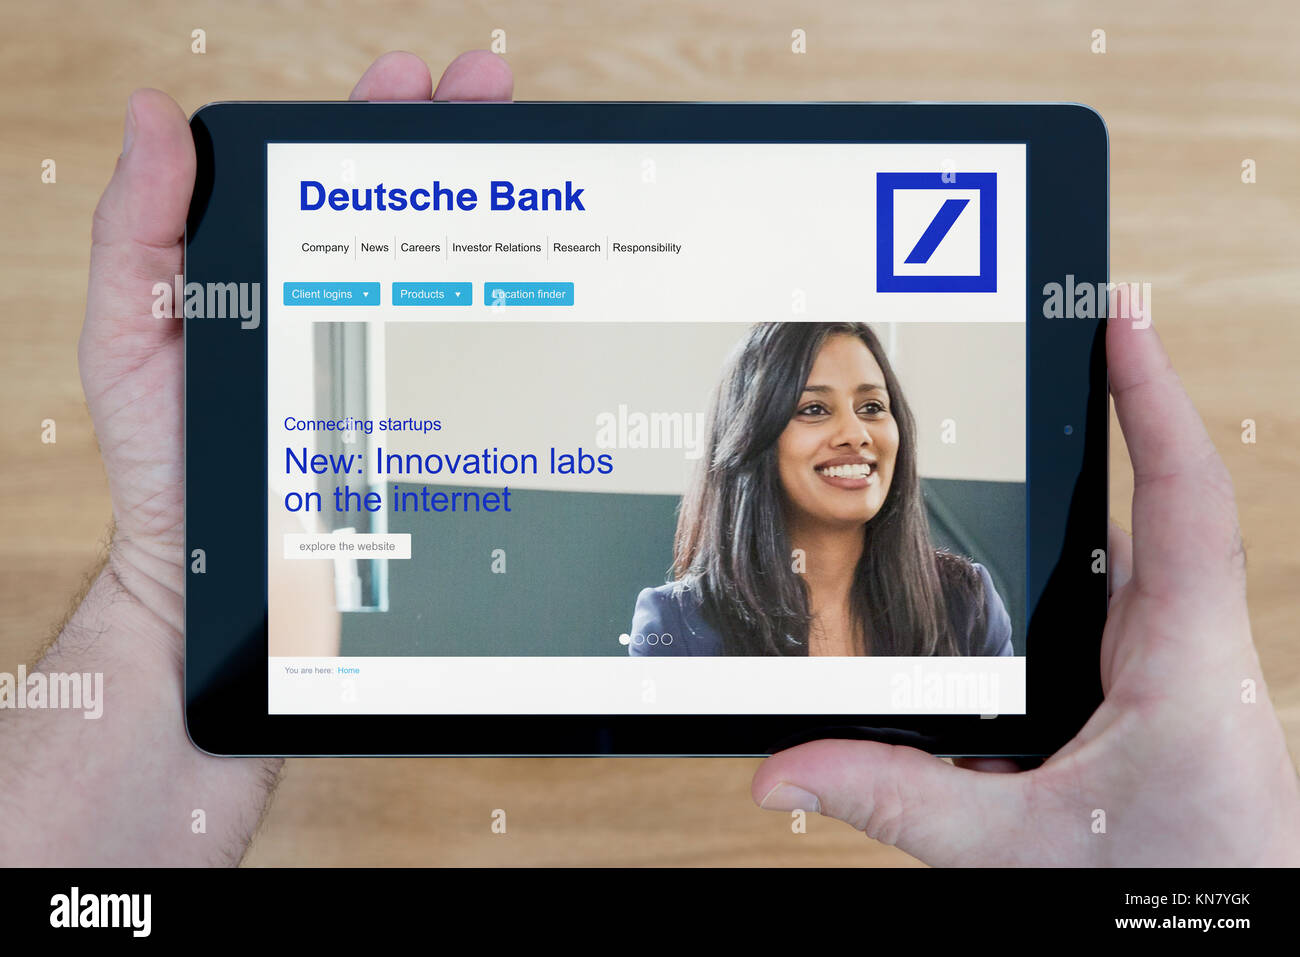 Un homme regarde le site web de la Deutsche Bank sur son iPad tablet device, tourné contre une table en bois page contexte (usage éditorial uniquement) Banque D'Images